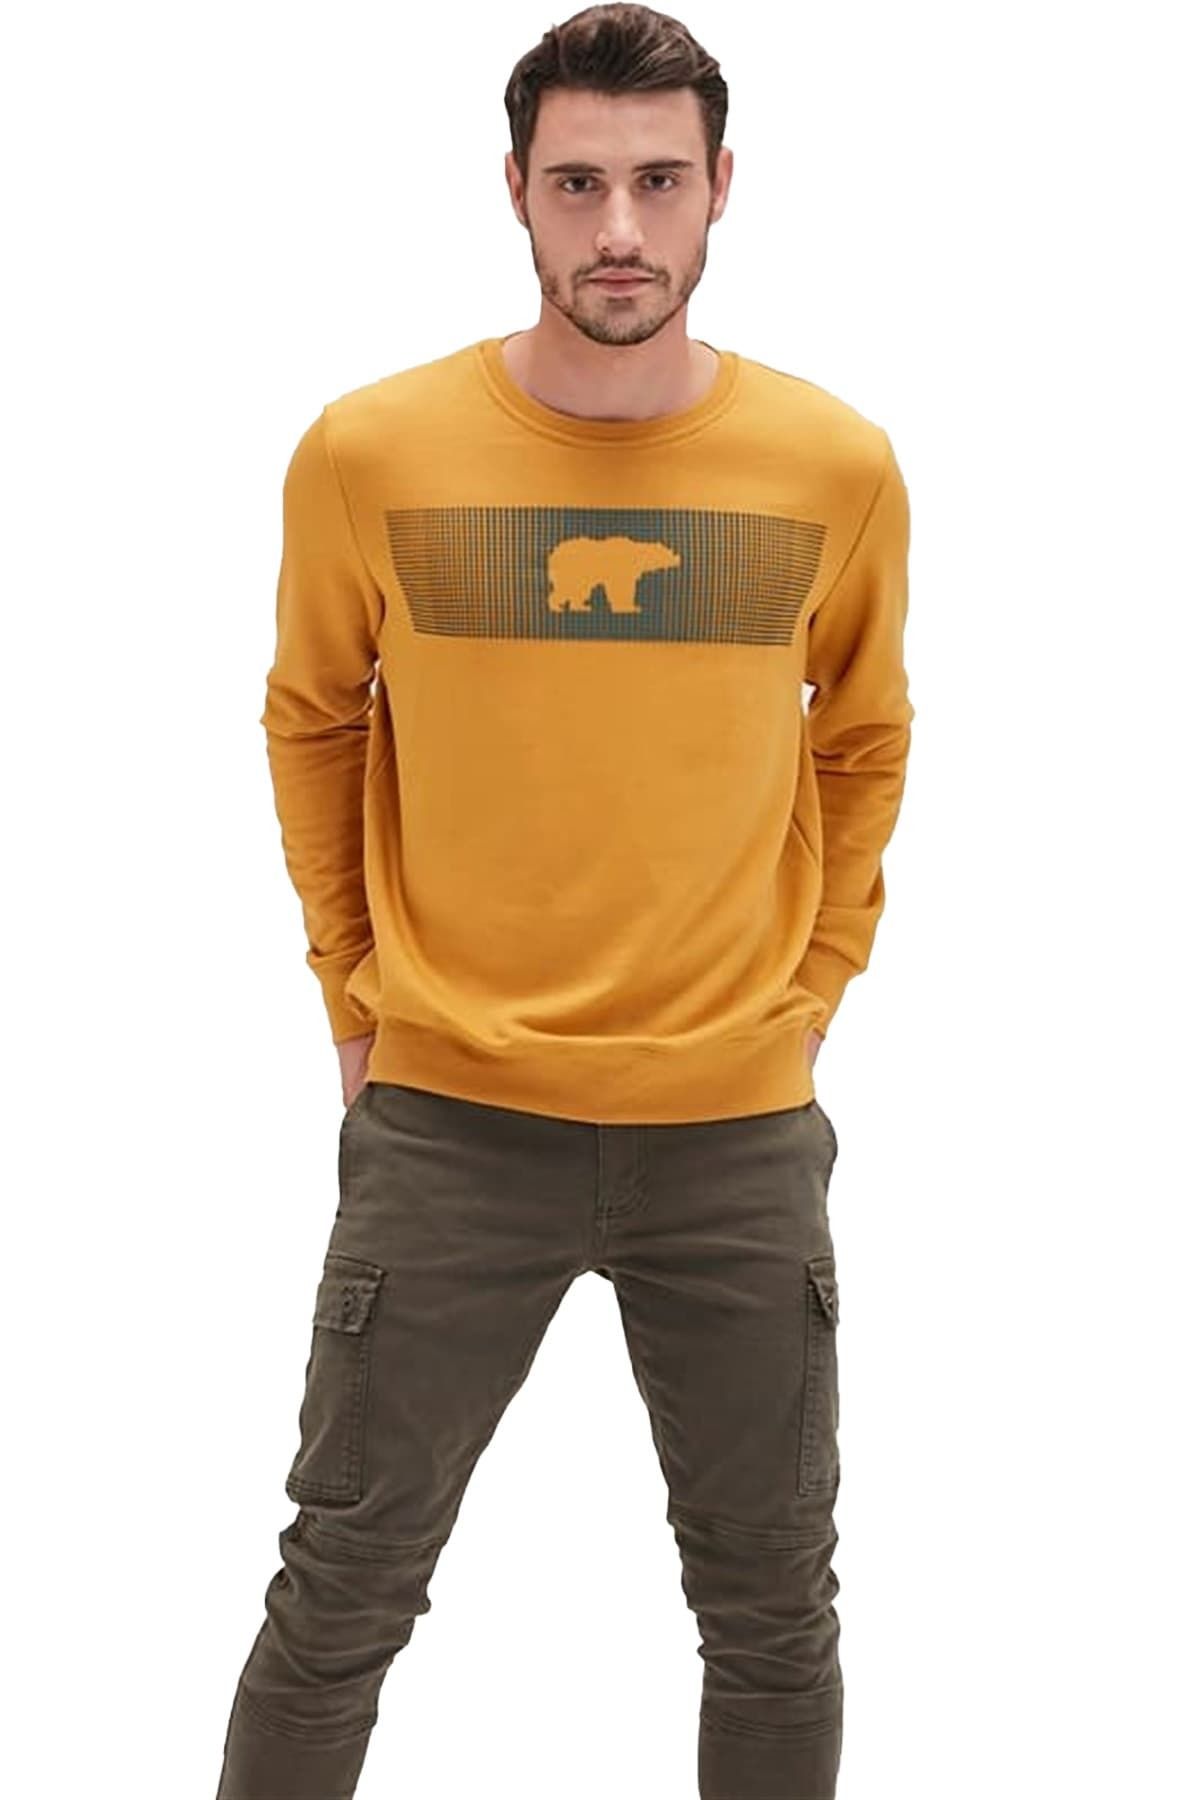 Bad Bear Ayı Baskılı Fancy Crewneck Sweatshirt - Sarı